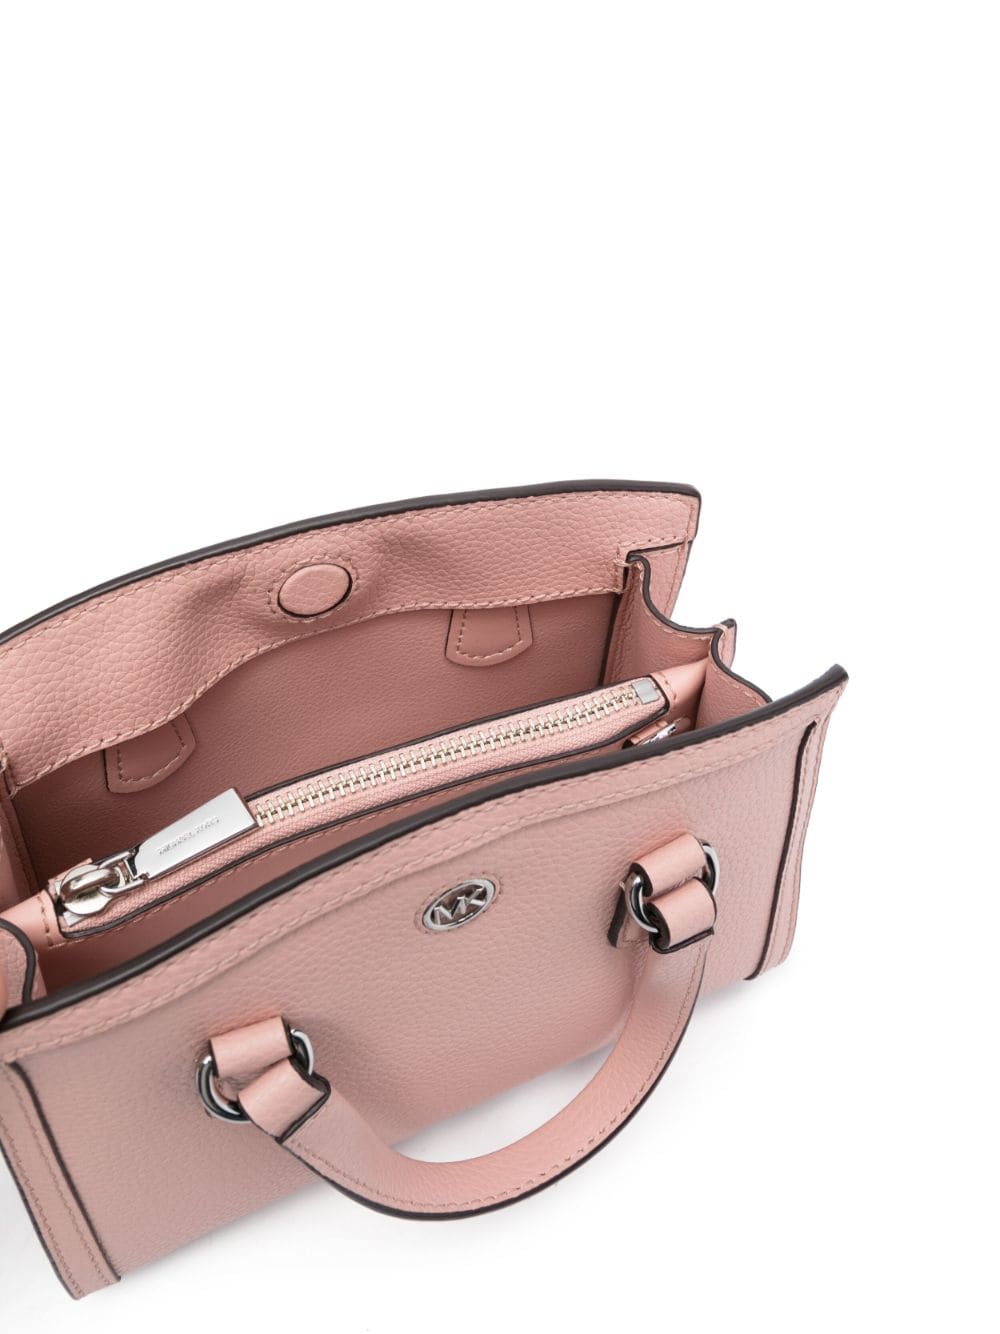 Michael Kors Chantal Canvas Pink Handbag - Ferraris Boutique